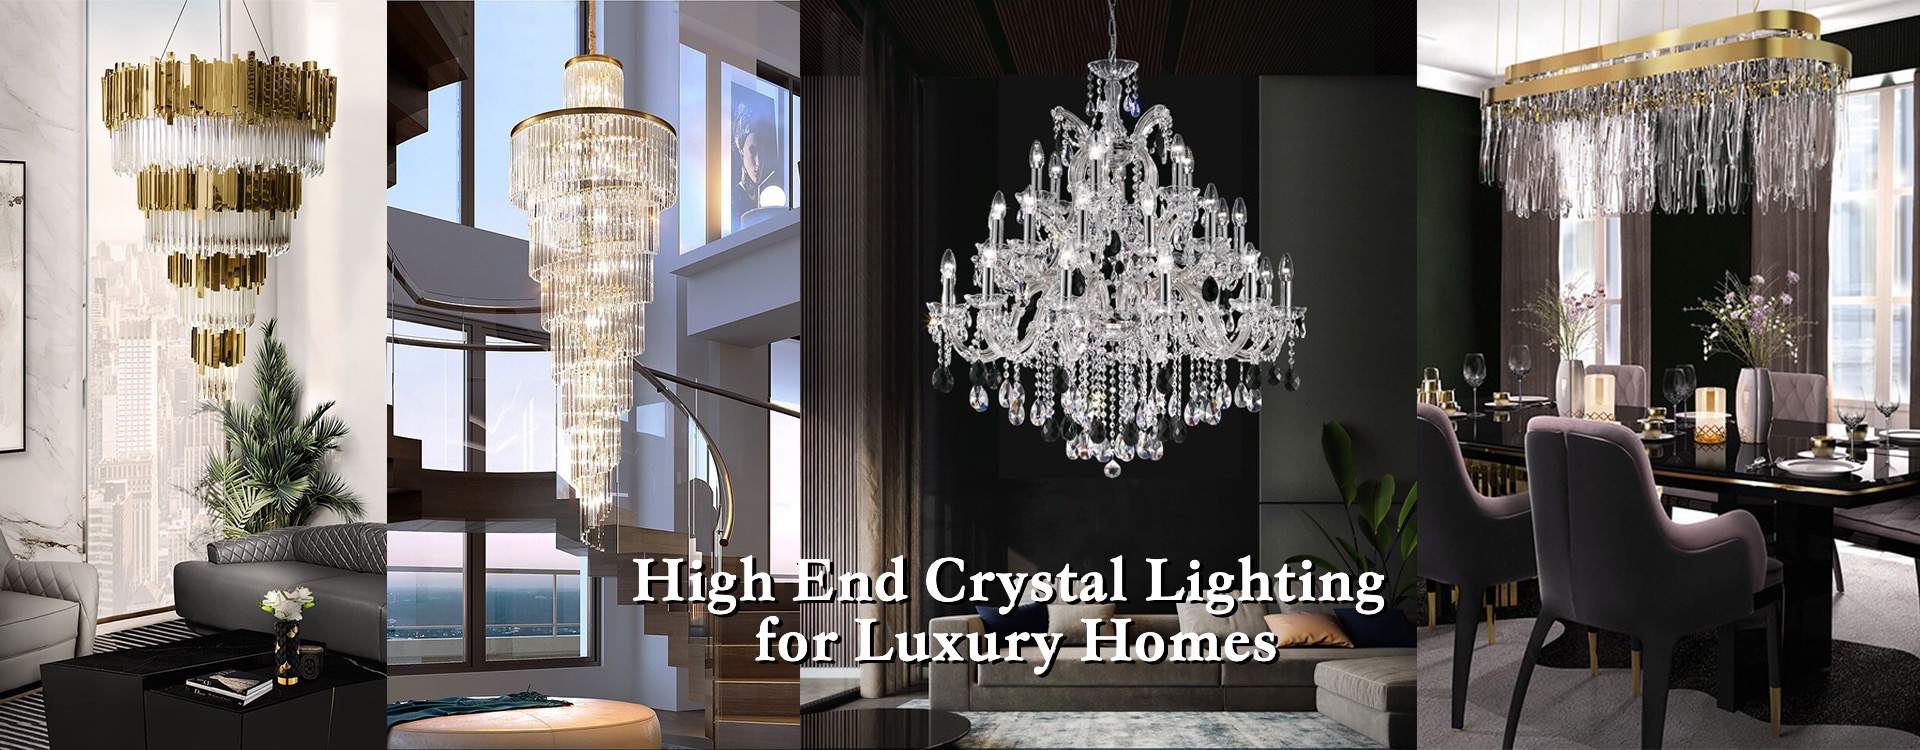 Iluminación de cristal de alta gama para casas de lujo